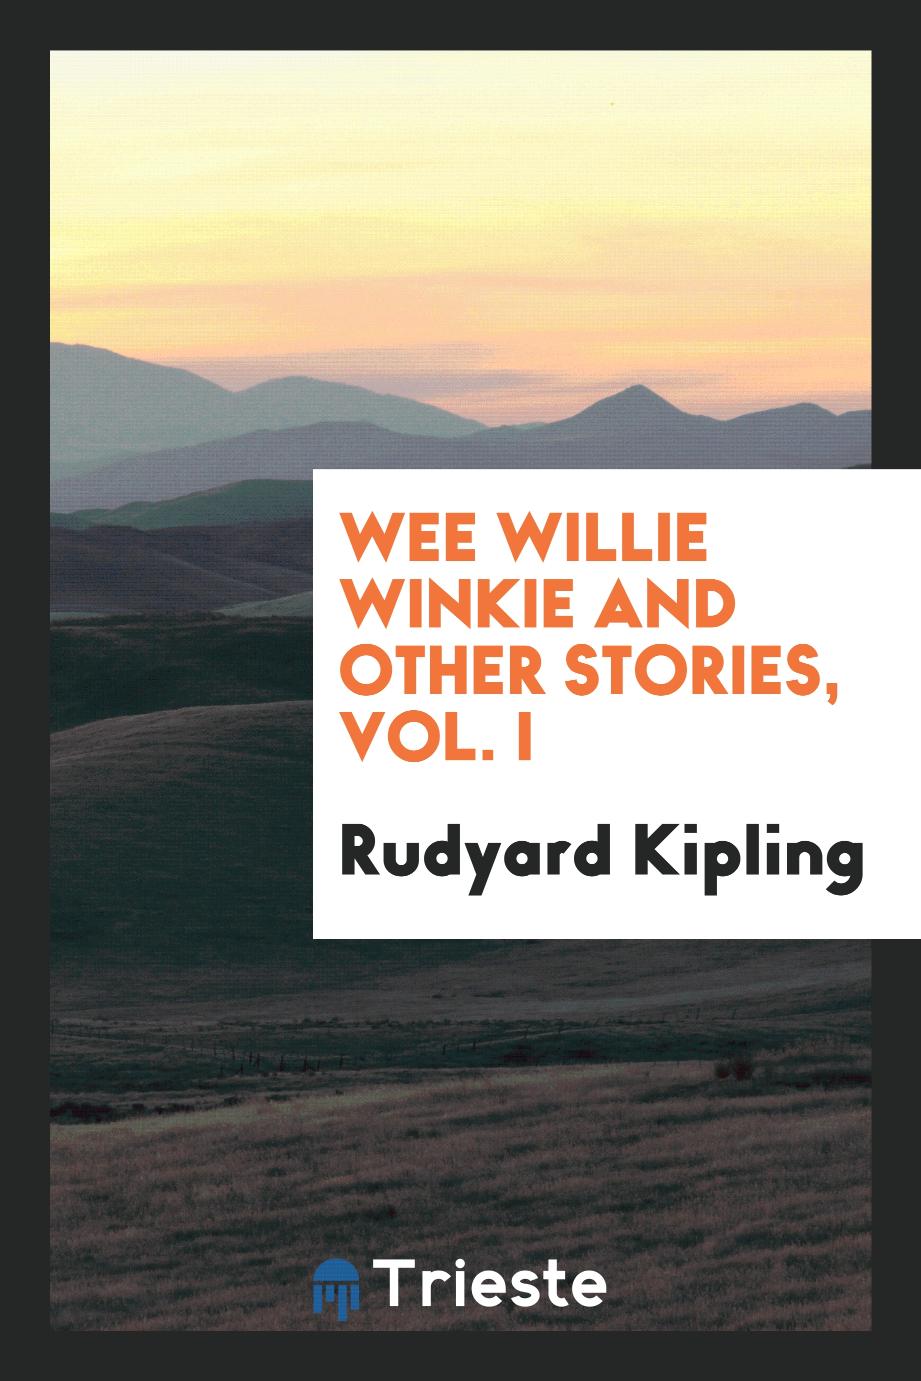 Rudyard Kipling - Wee Willie Winkie and other stories, Vol. I